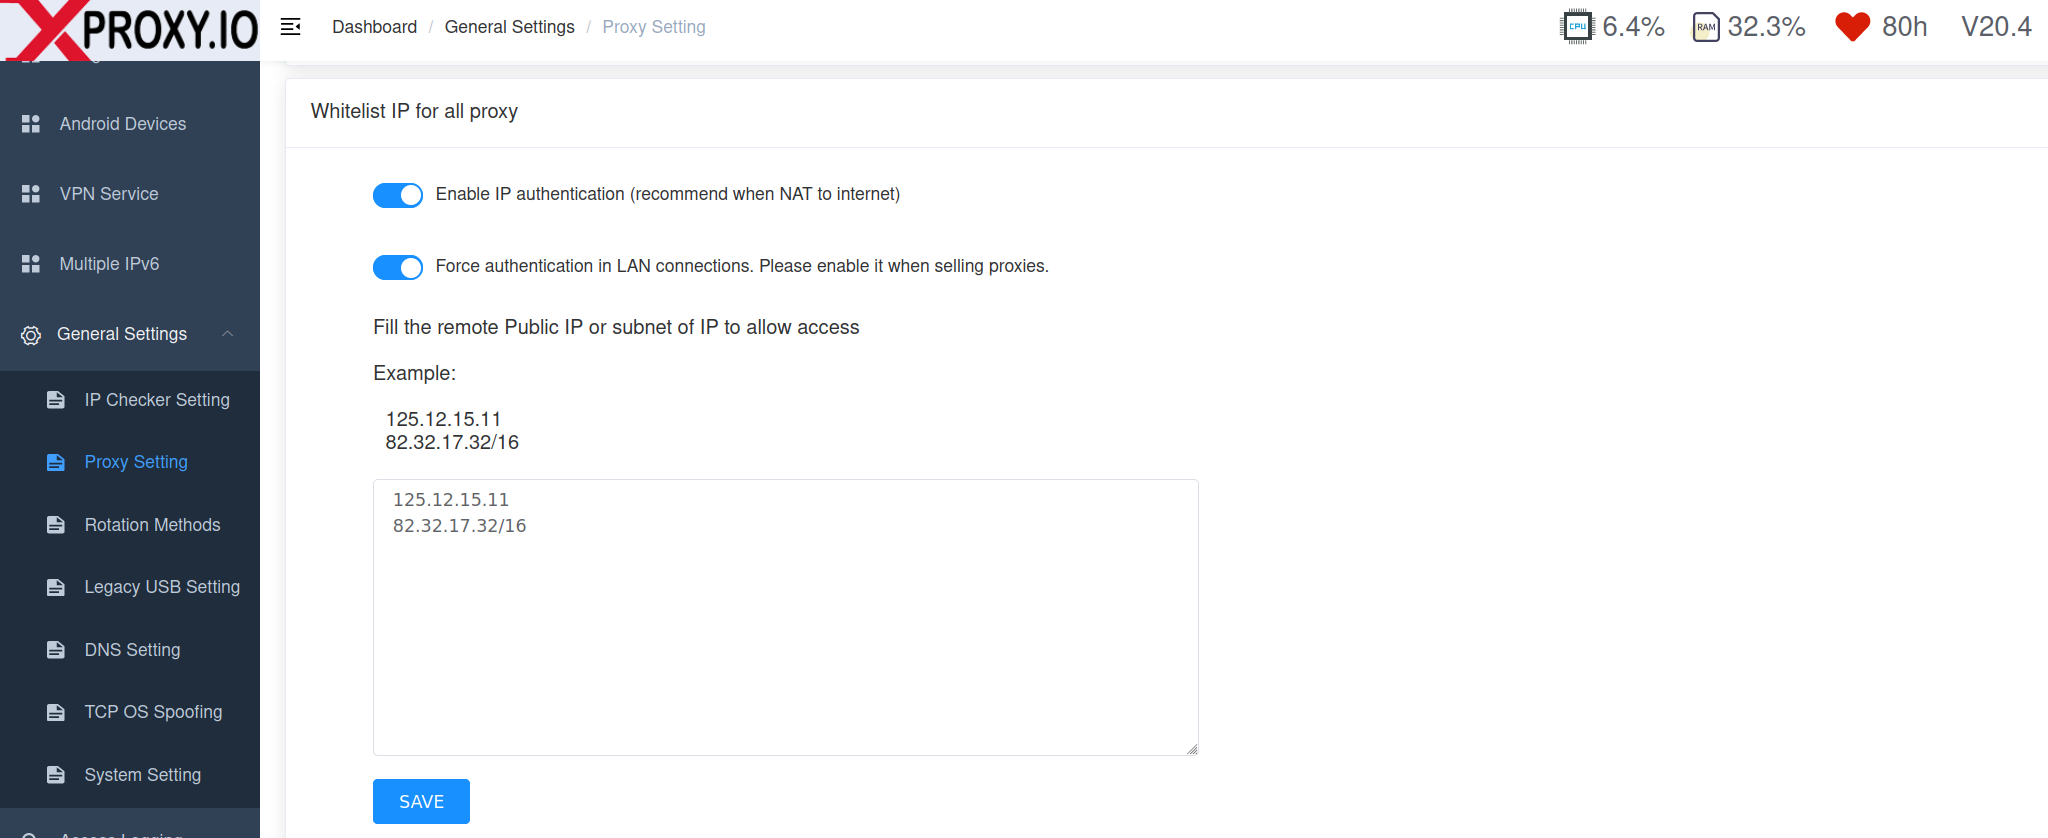 Whitelist IP Authentication - Waiting for image loading